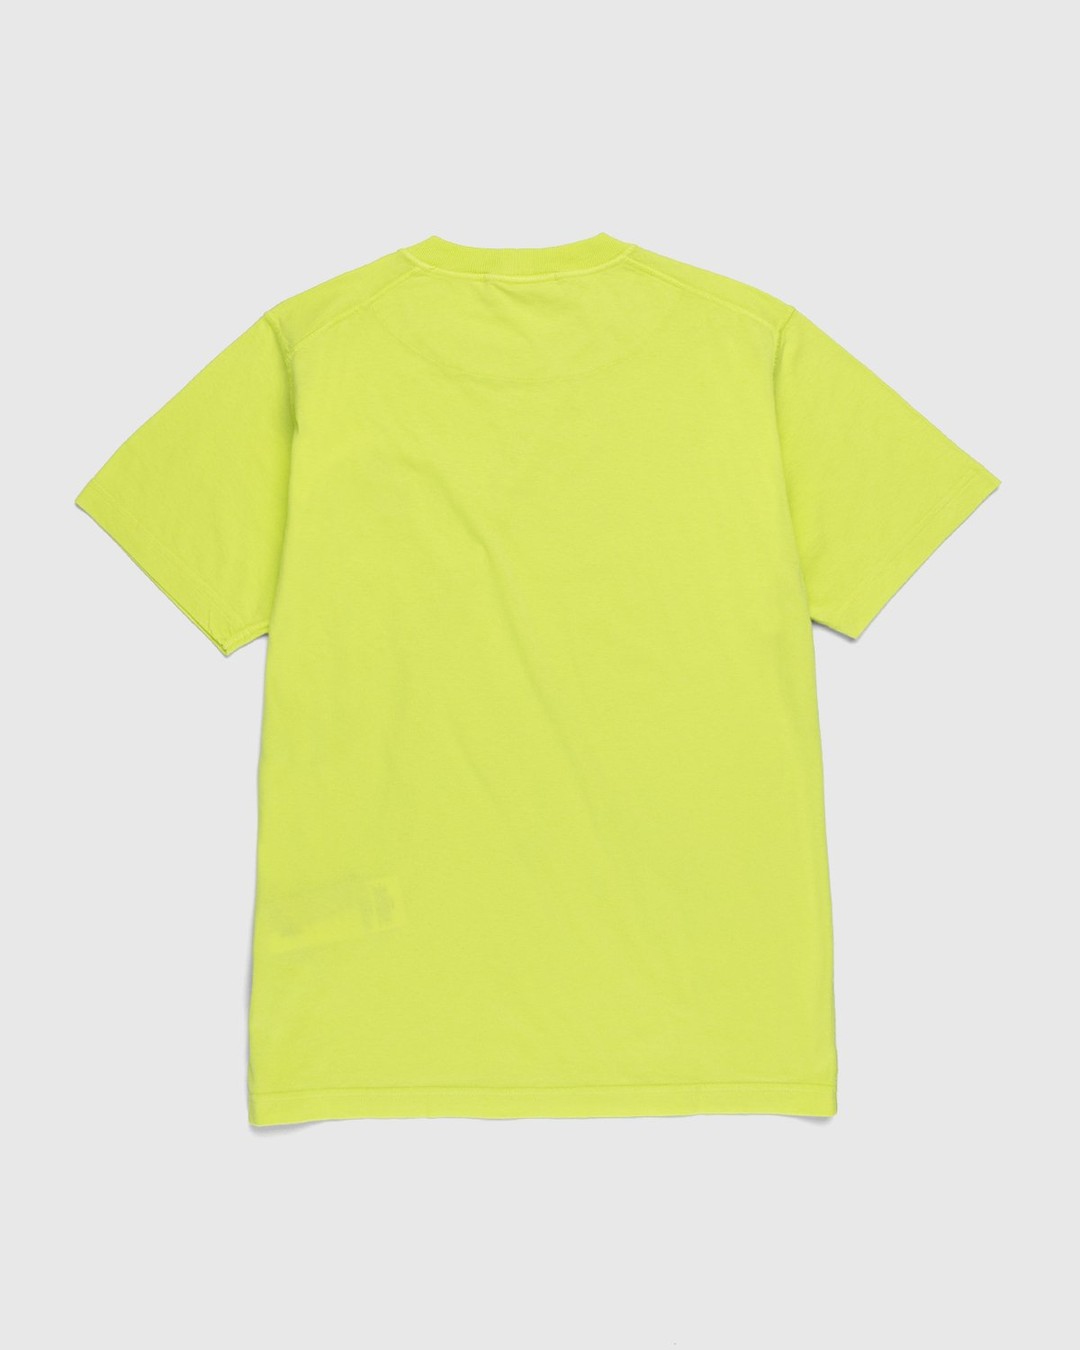 Stone Island – 23757 Garment-Dyed Fissato T-Shirt Lemon - T-shirts - Yellow - Image 2